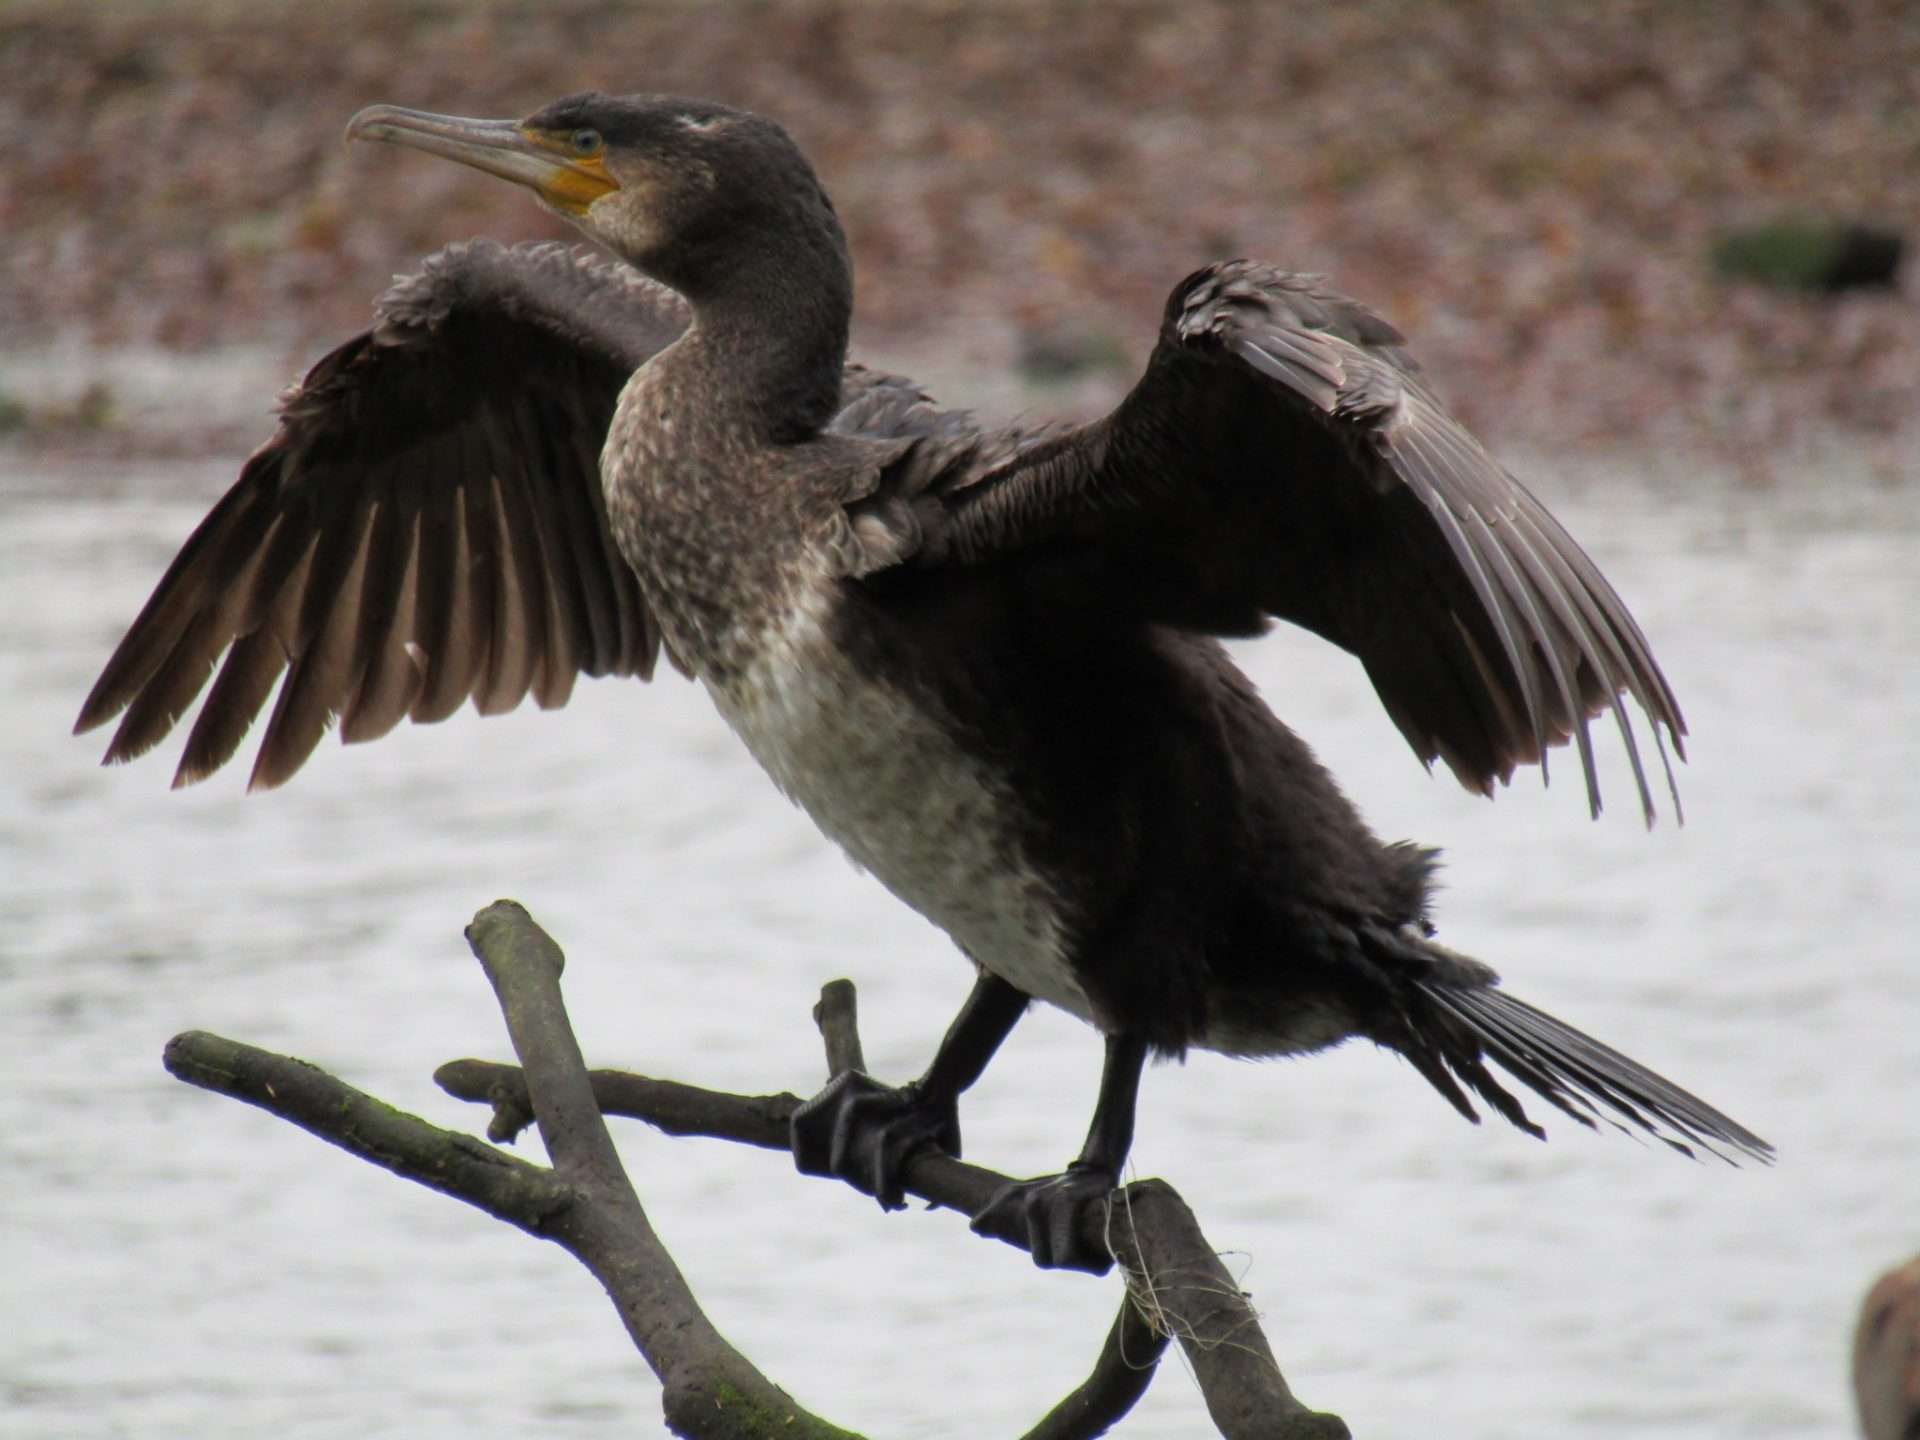 Cormorant by Elizabeth Mulgrew at River Plym